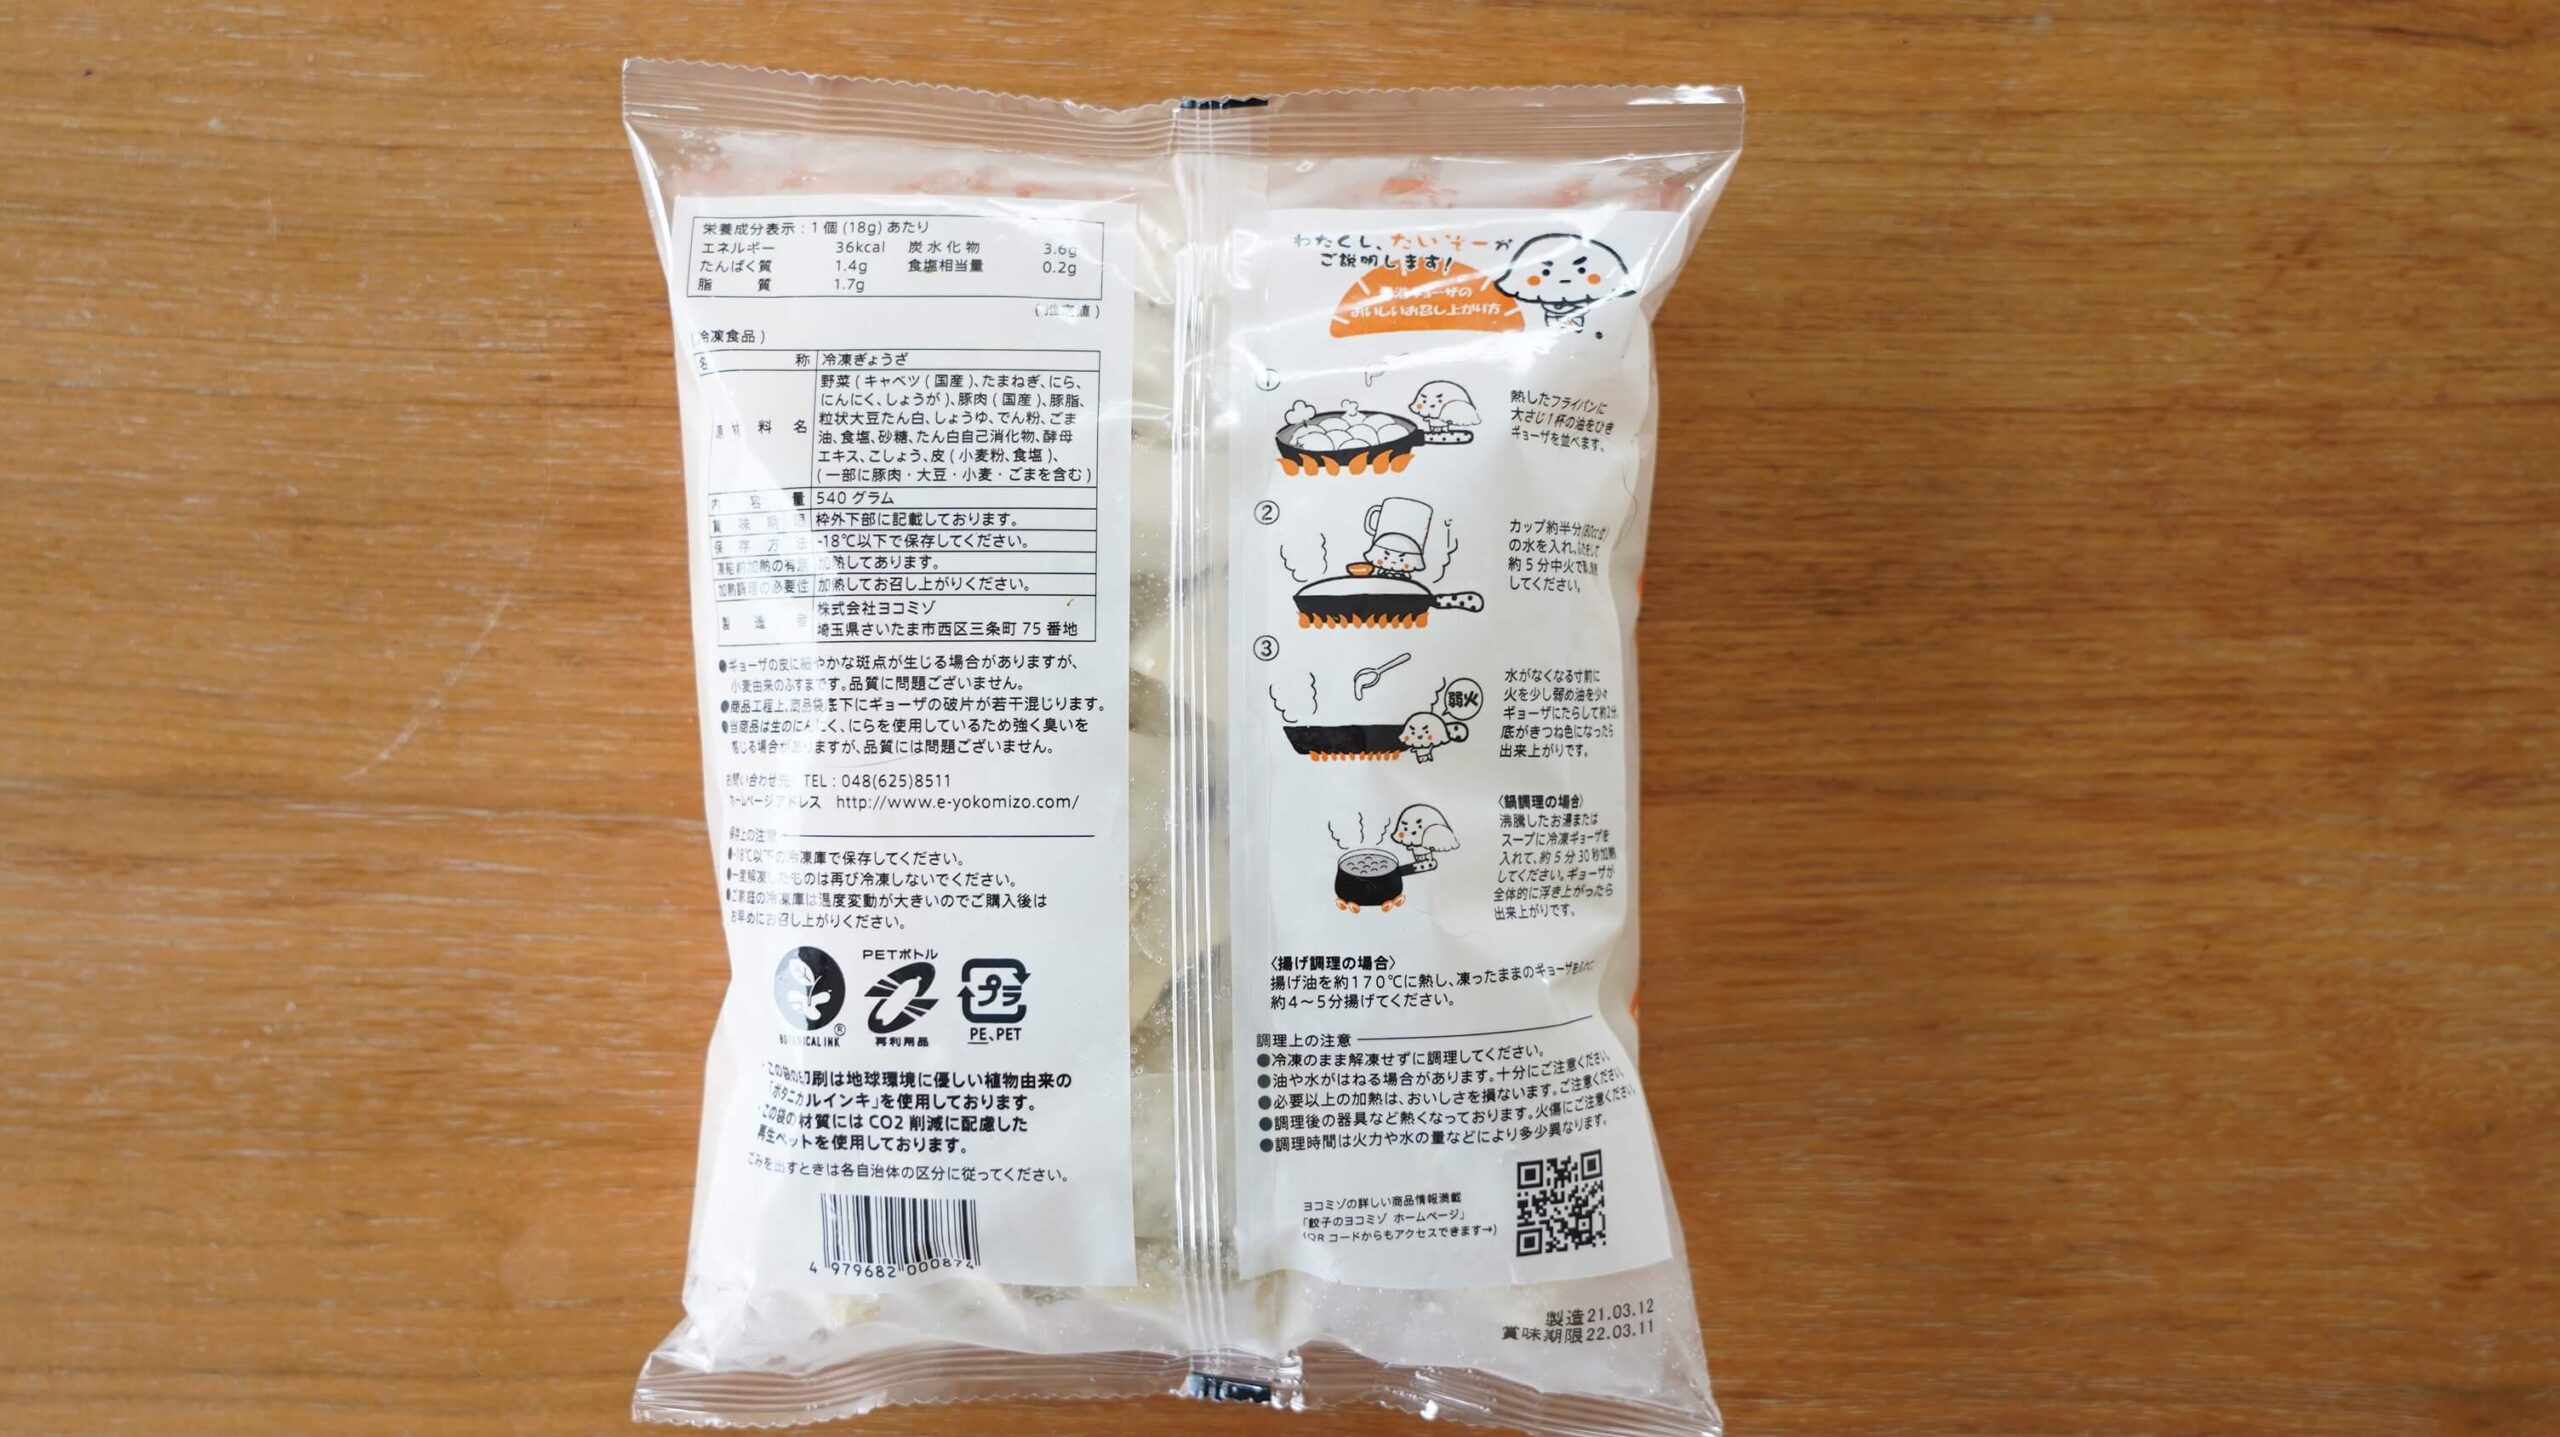 生協宅配限定の冷凍餃子「香港ギョーザ」のパッケージ裏面の写真